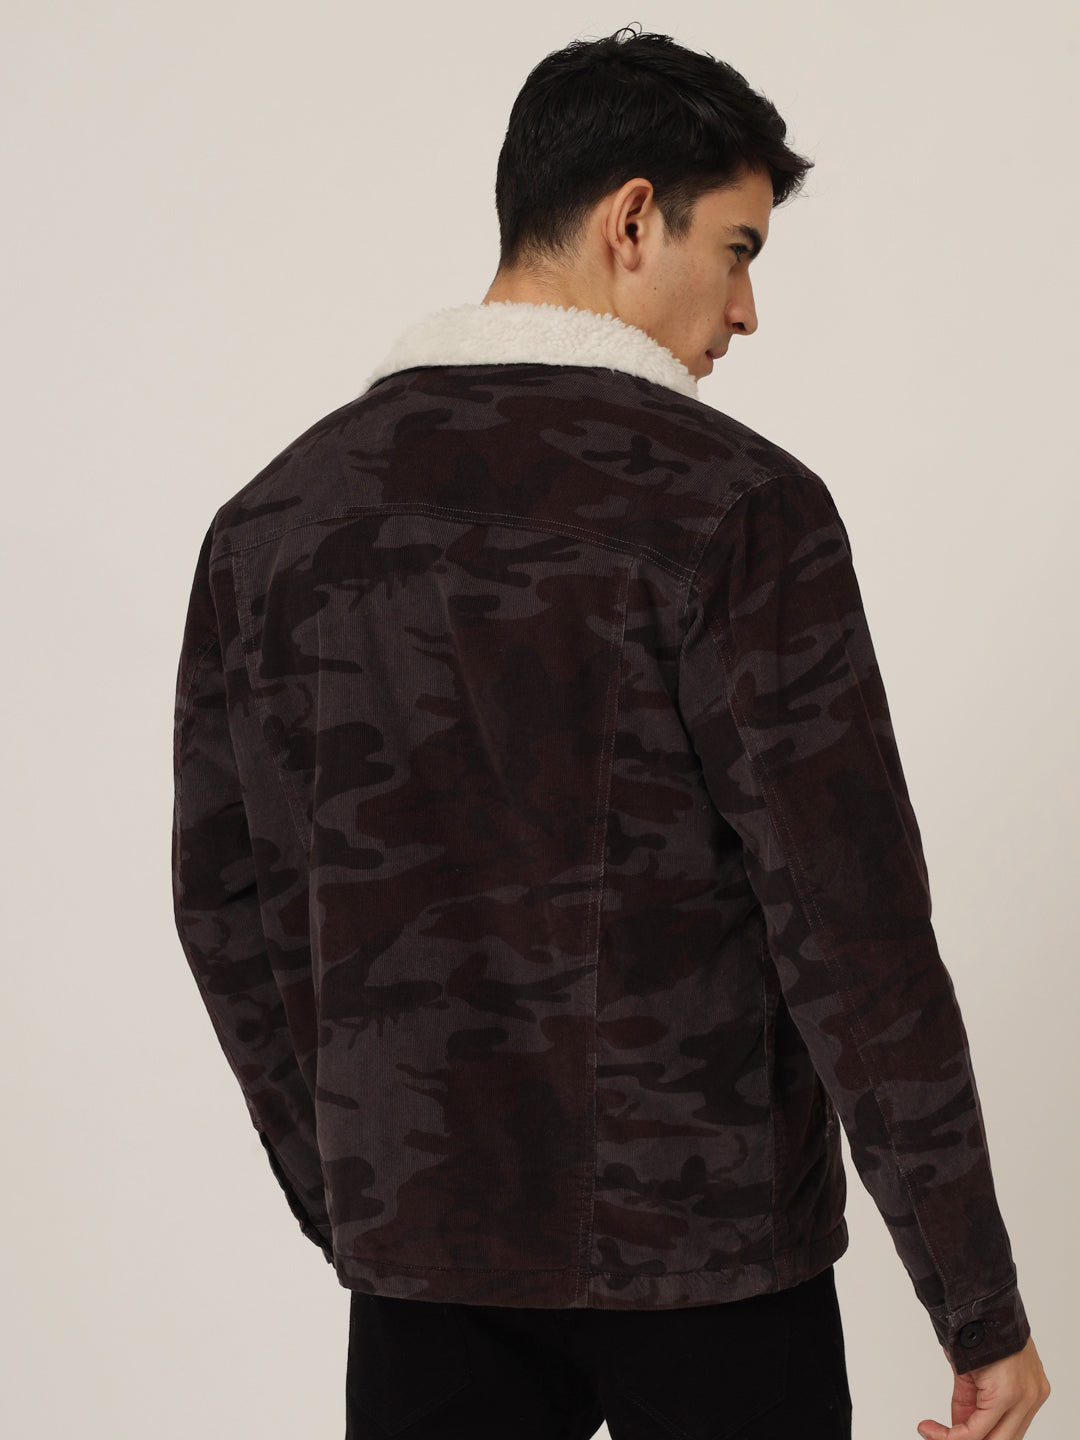 Camouflage print corduroy jacket